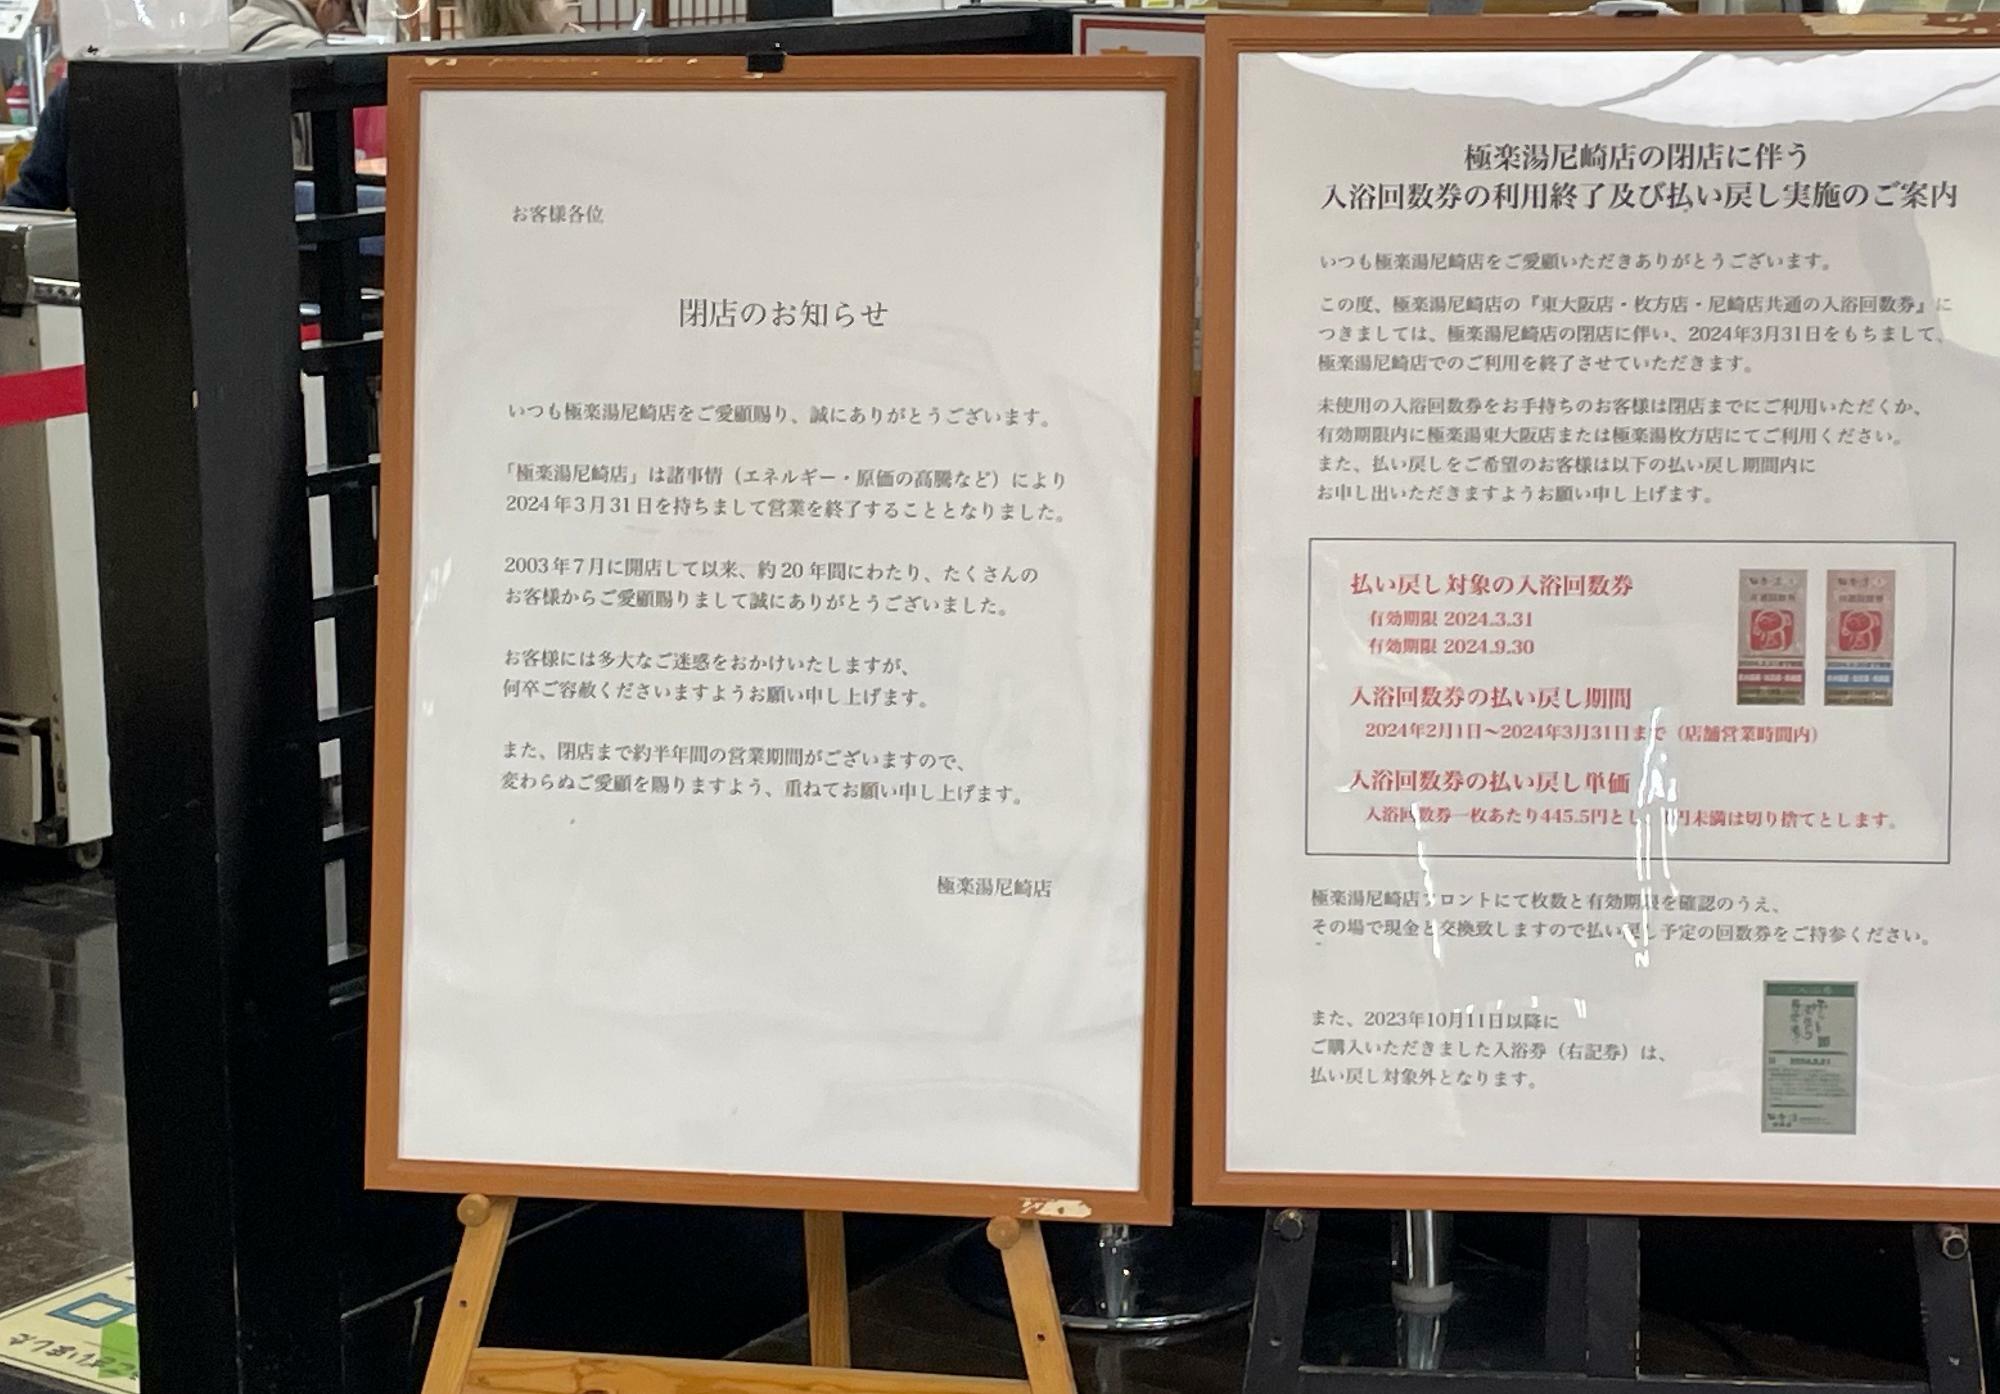 尼崎市】20年の営業が終了。JR尼崎のスーパー銭湯「極楽湯」が閉店する